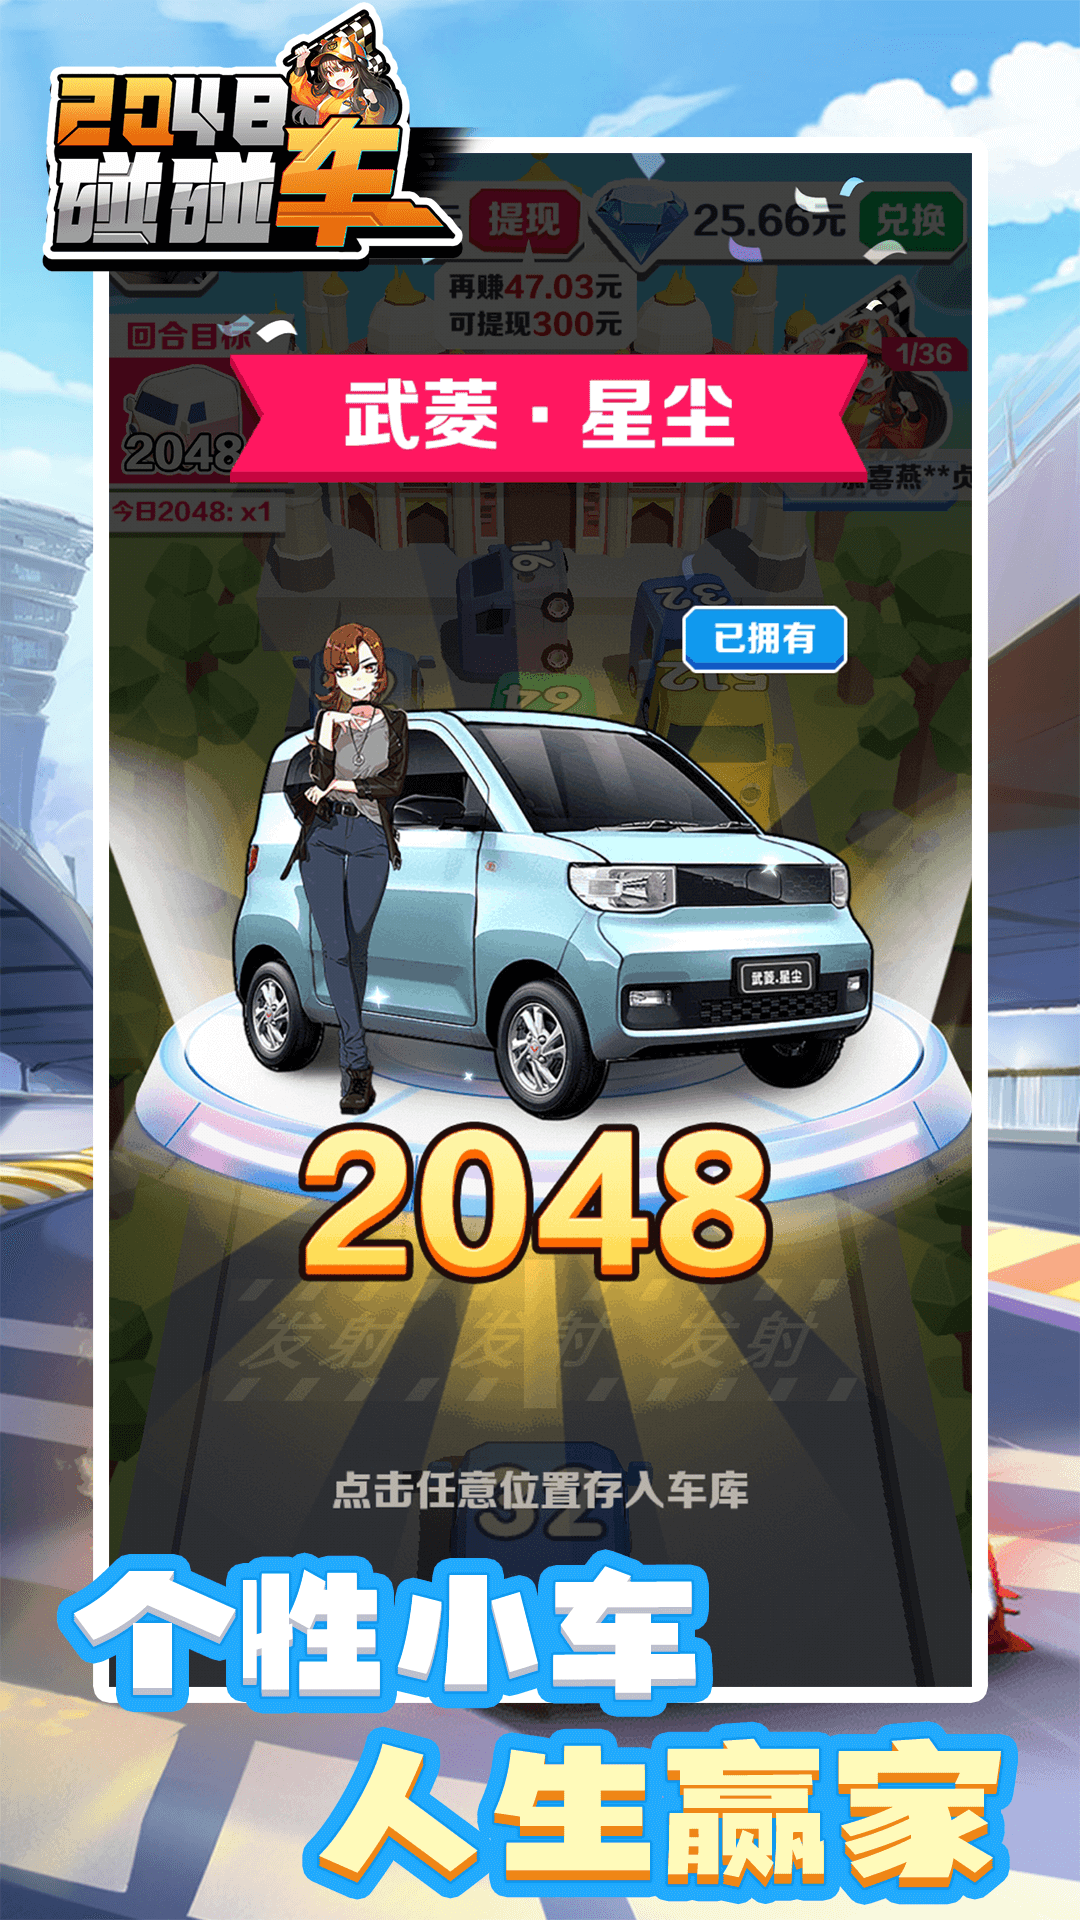 2048碰碰车游戏红包版下载截图3: